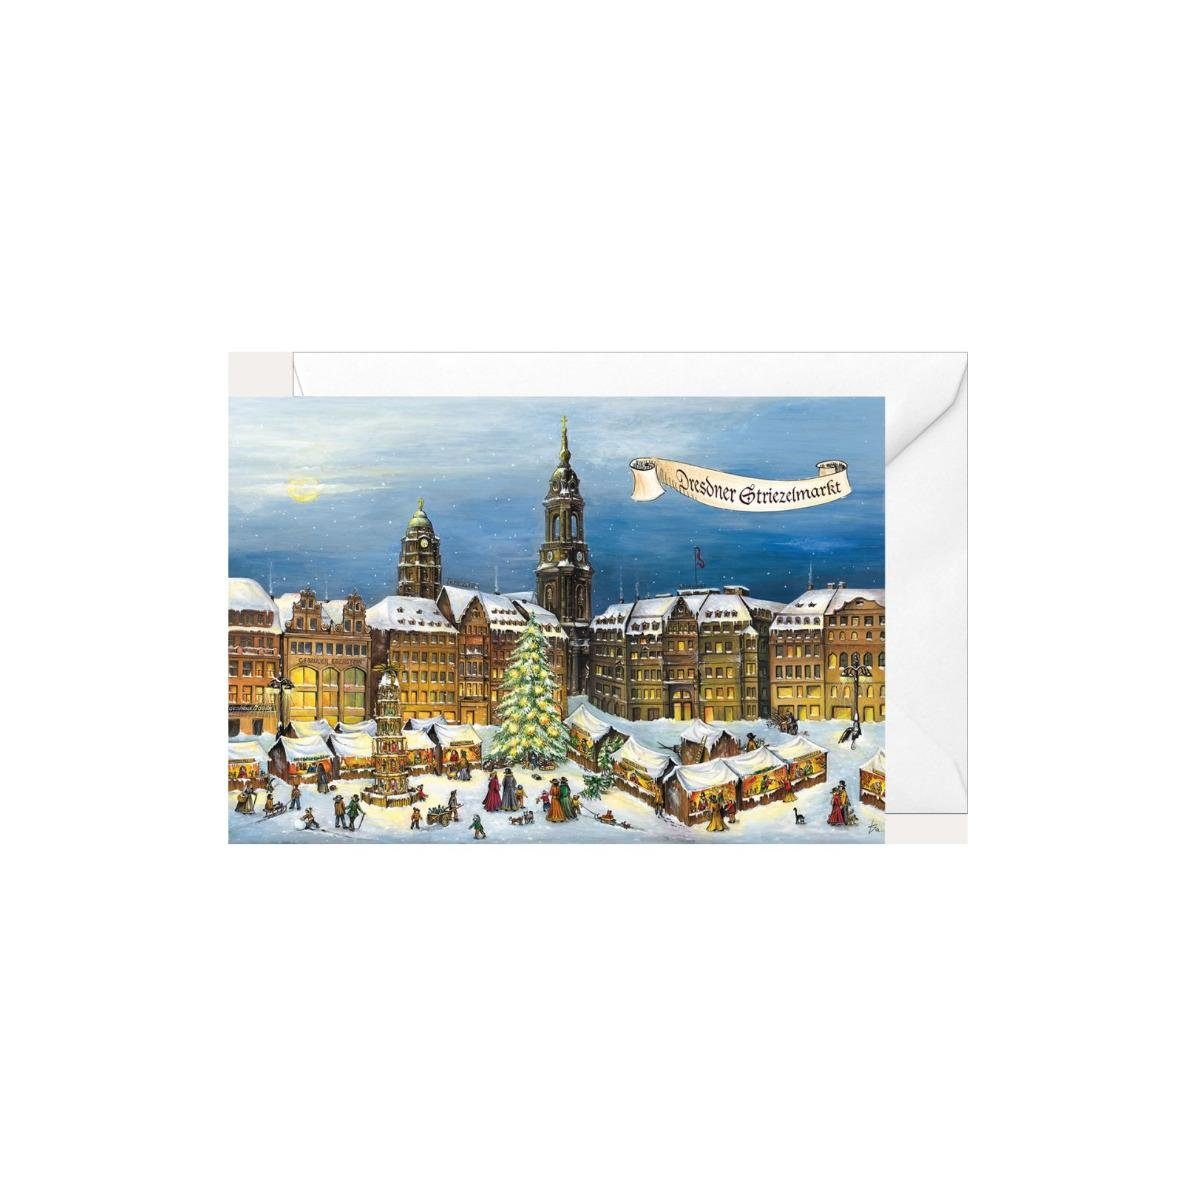 2245 & - Striezelmarkt" "Dresdner Weihnachtsklappkarte Tochter Olewinski Grußkarte